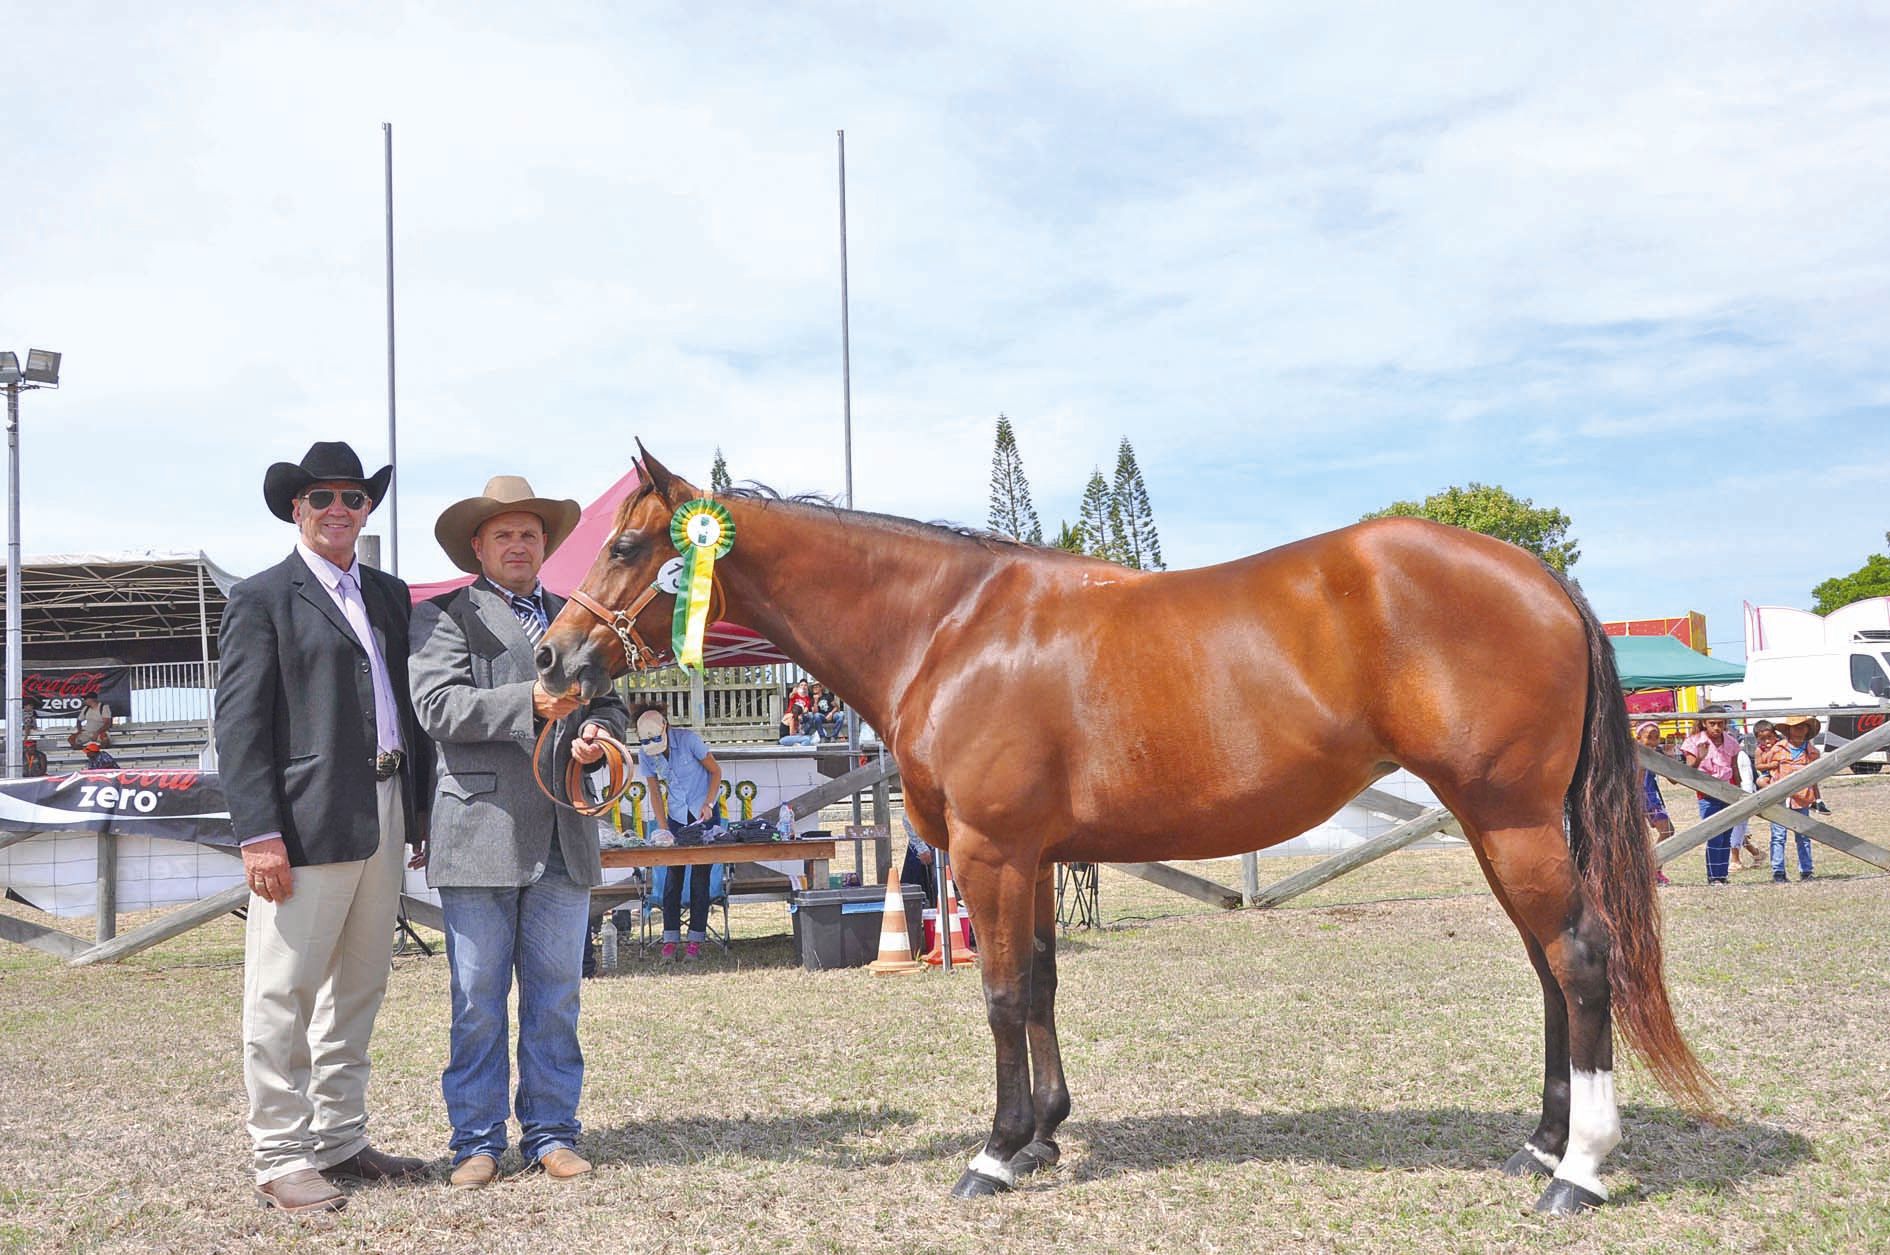 Spini Choice, championne de race Quarter Horse (propriétaire Karl Willemot)a été consacrée Superchampionne de race américaine de foire 2017 par le juge australien Peter Bellden